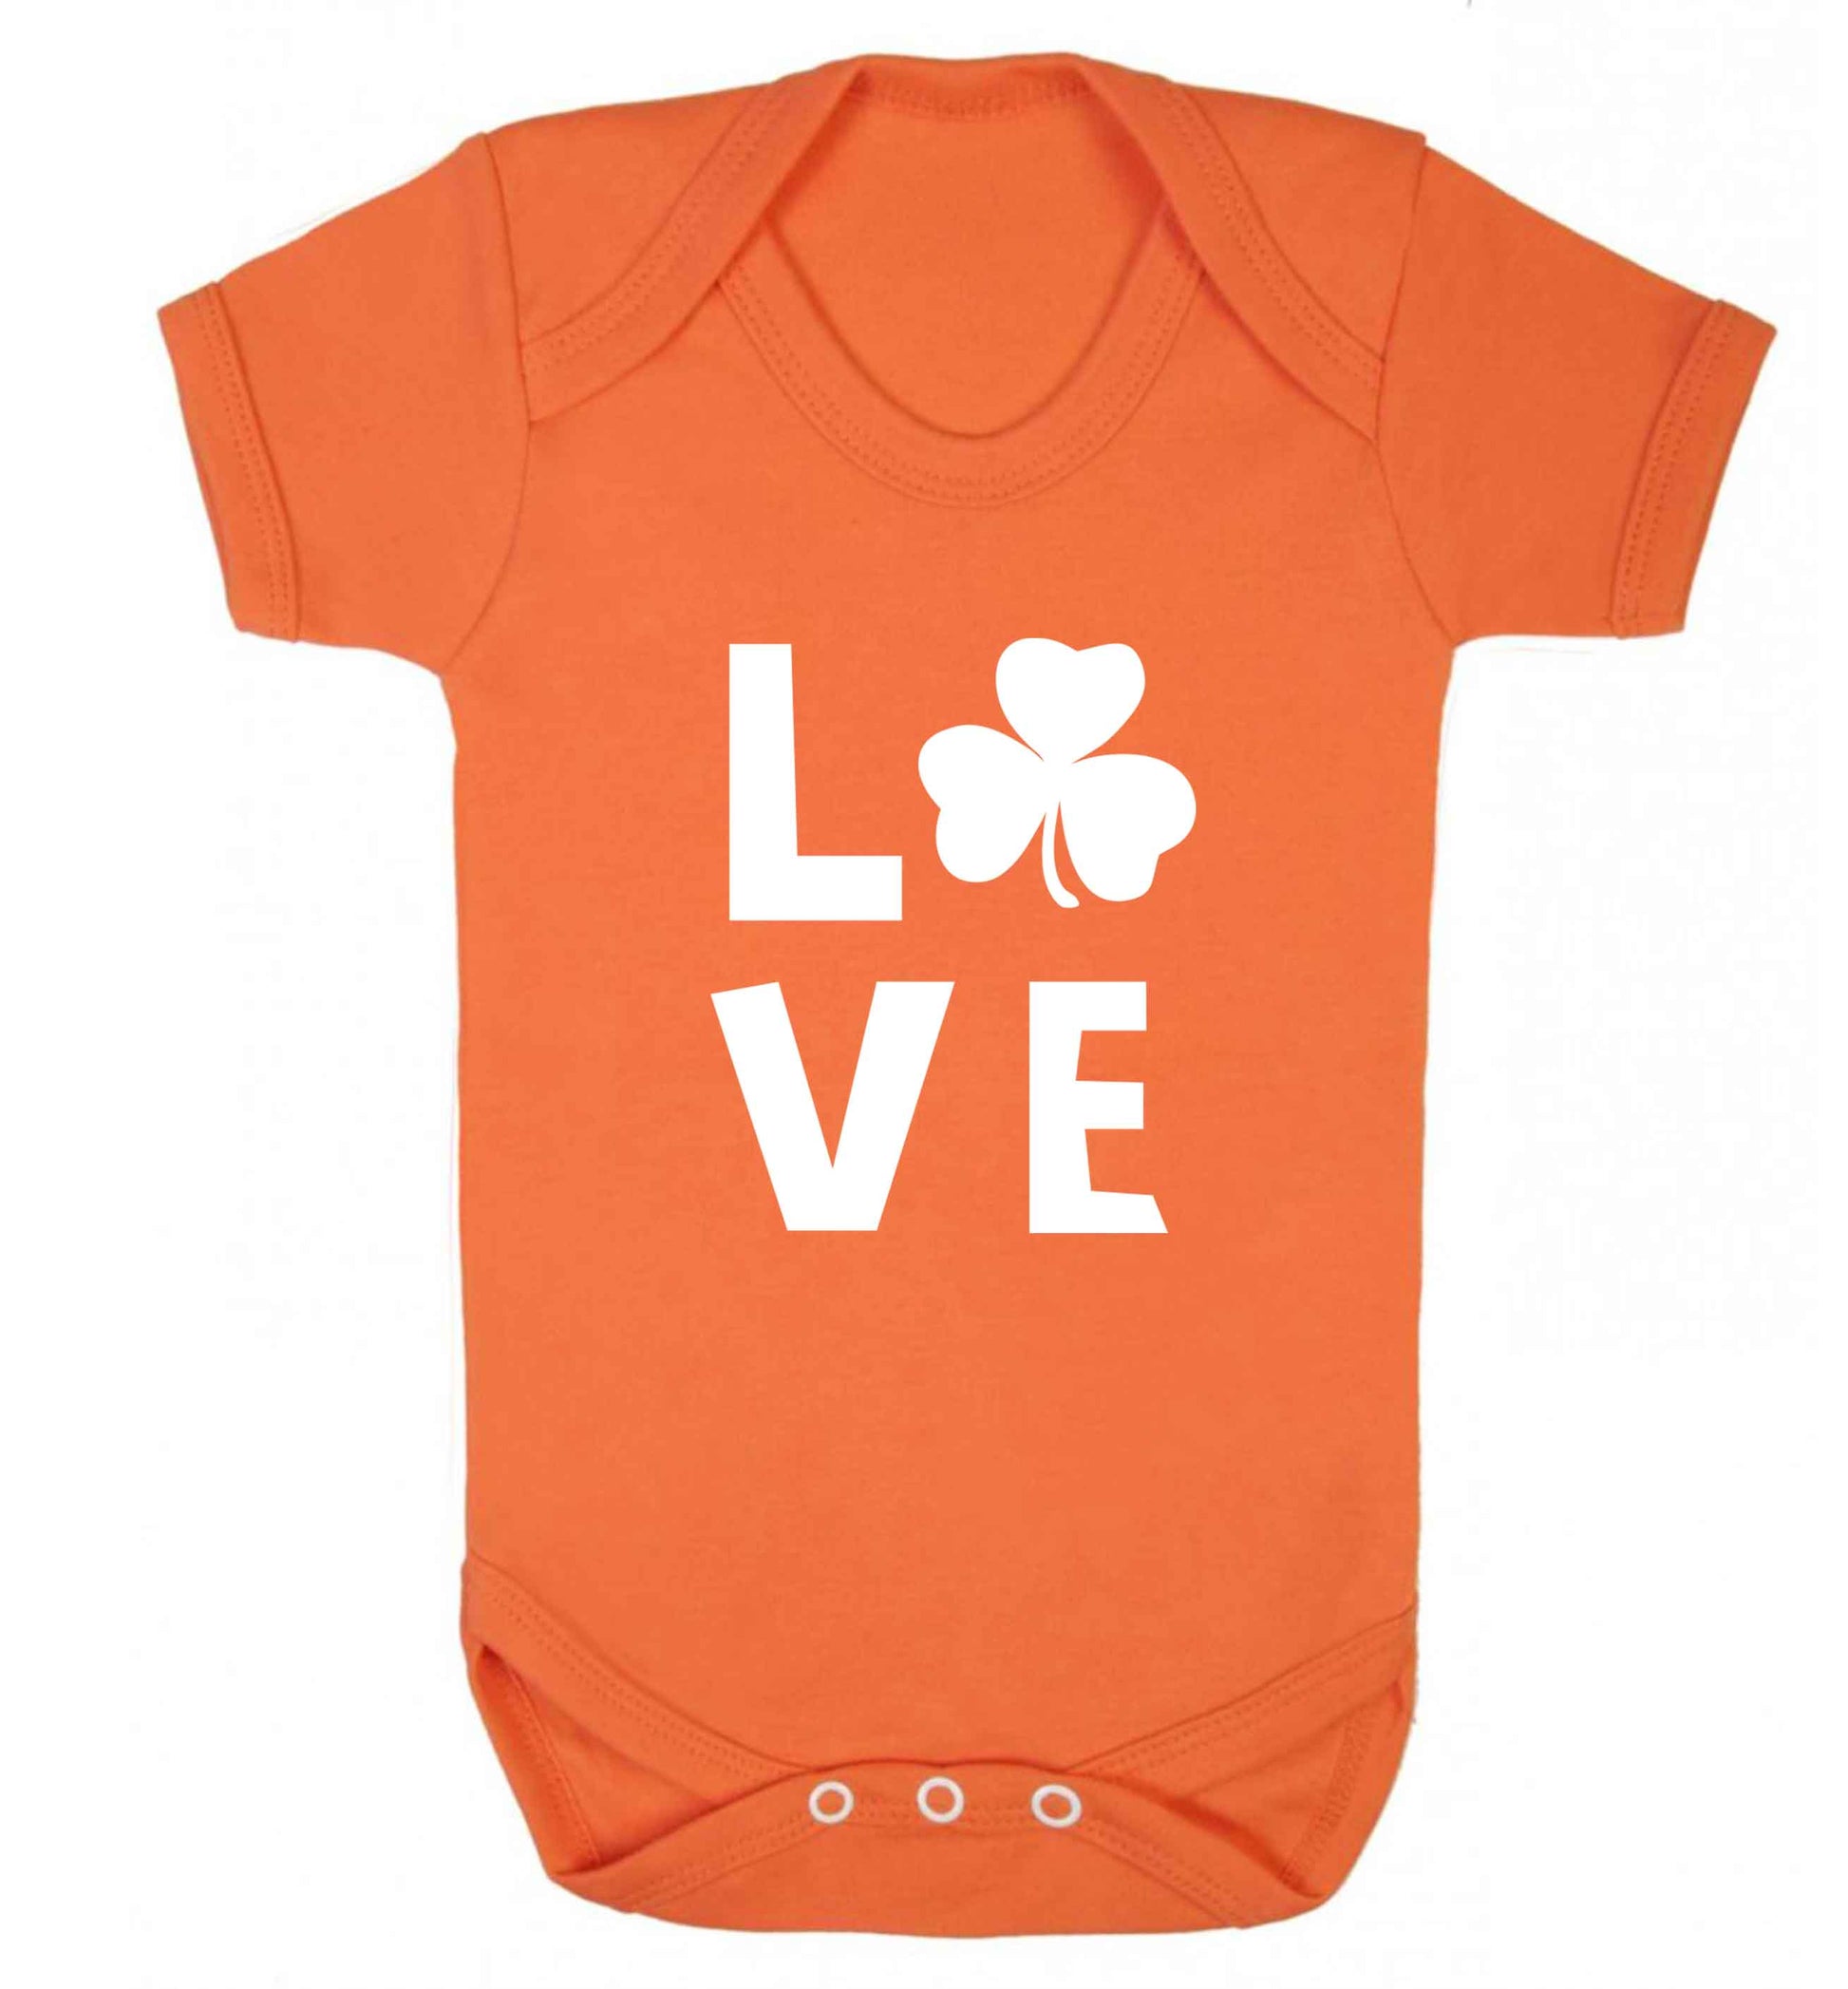 Shamrock love baby vest orange 18-24 months